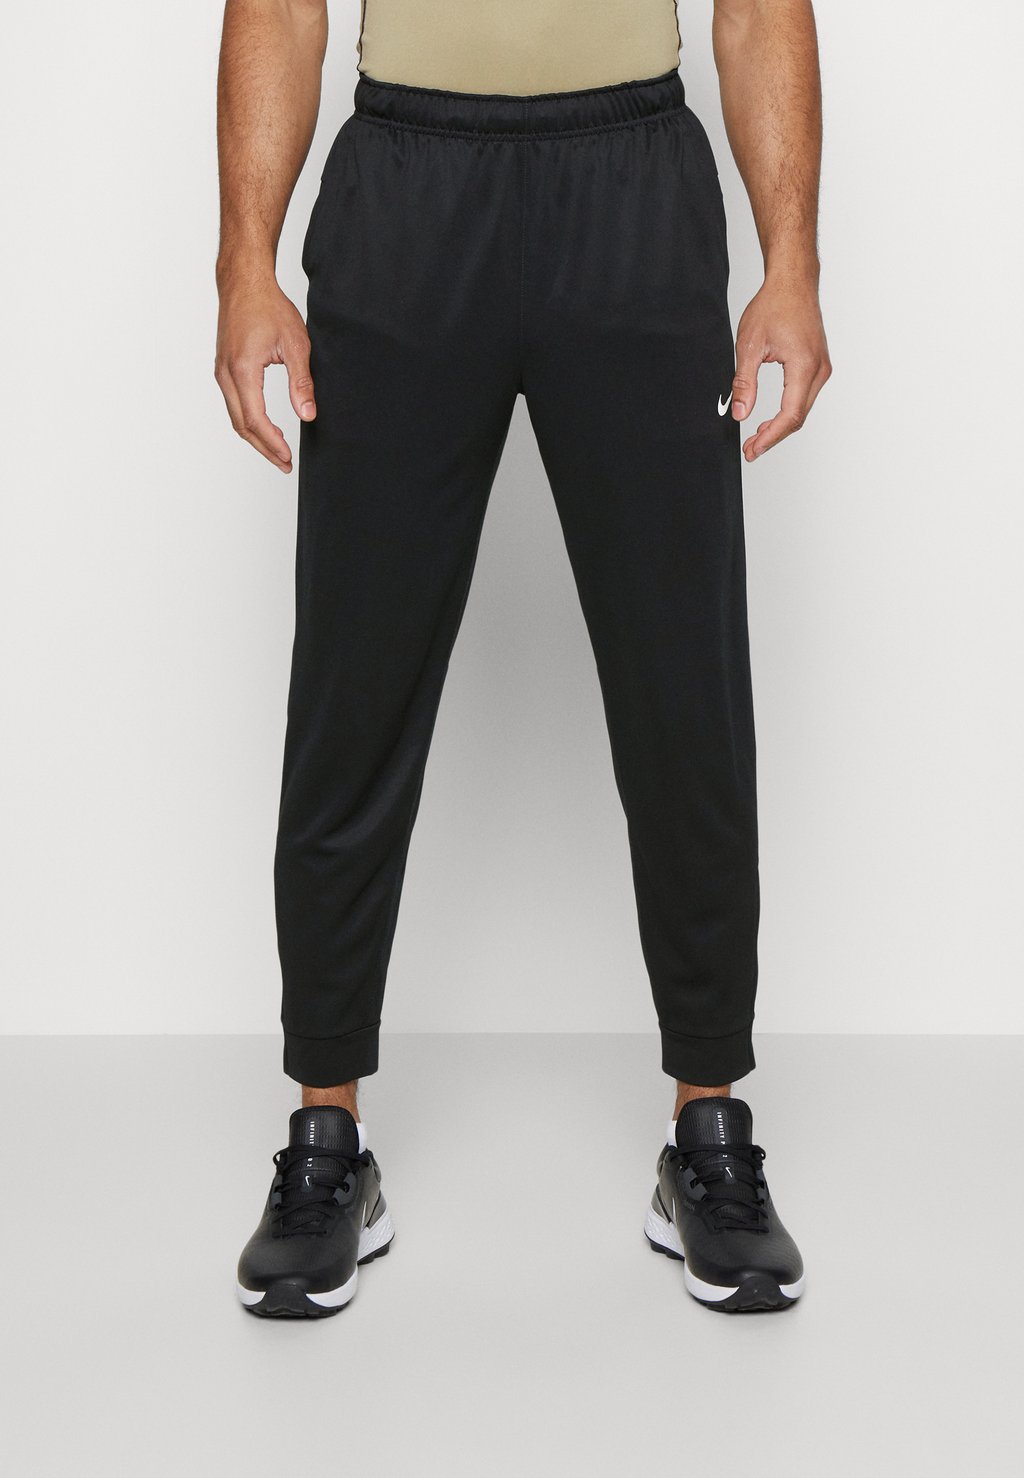 Спортивные брюки TOTALITY PANT Nike, черный/белый спортивные брюки pant taper nike черный белый